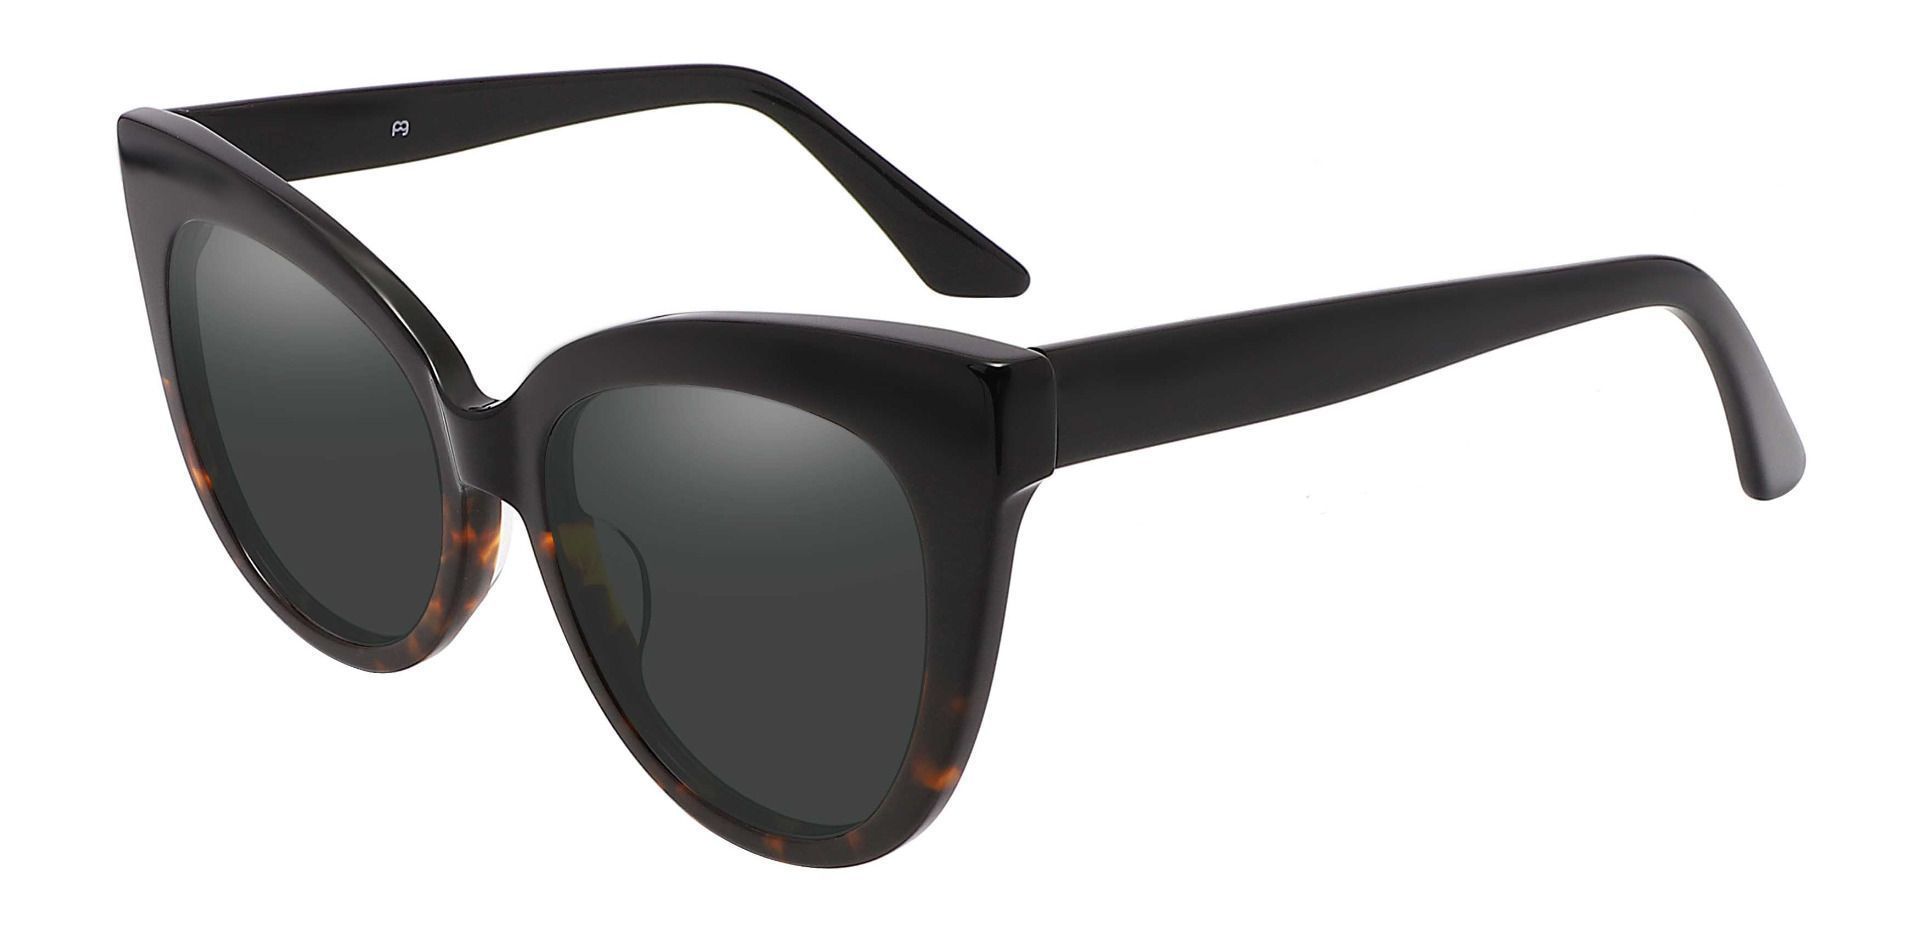 Sedalia Cat Eye Reading Sunglasses - Black Frame With Gray Lenses